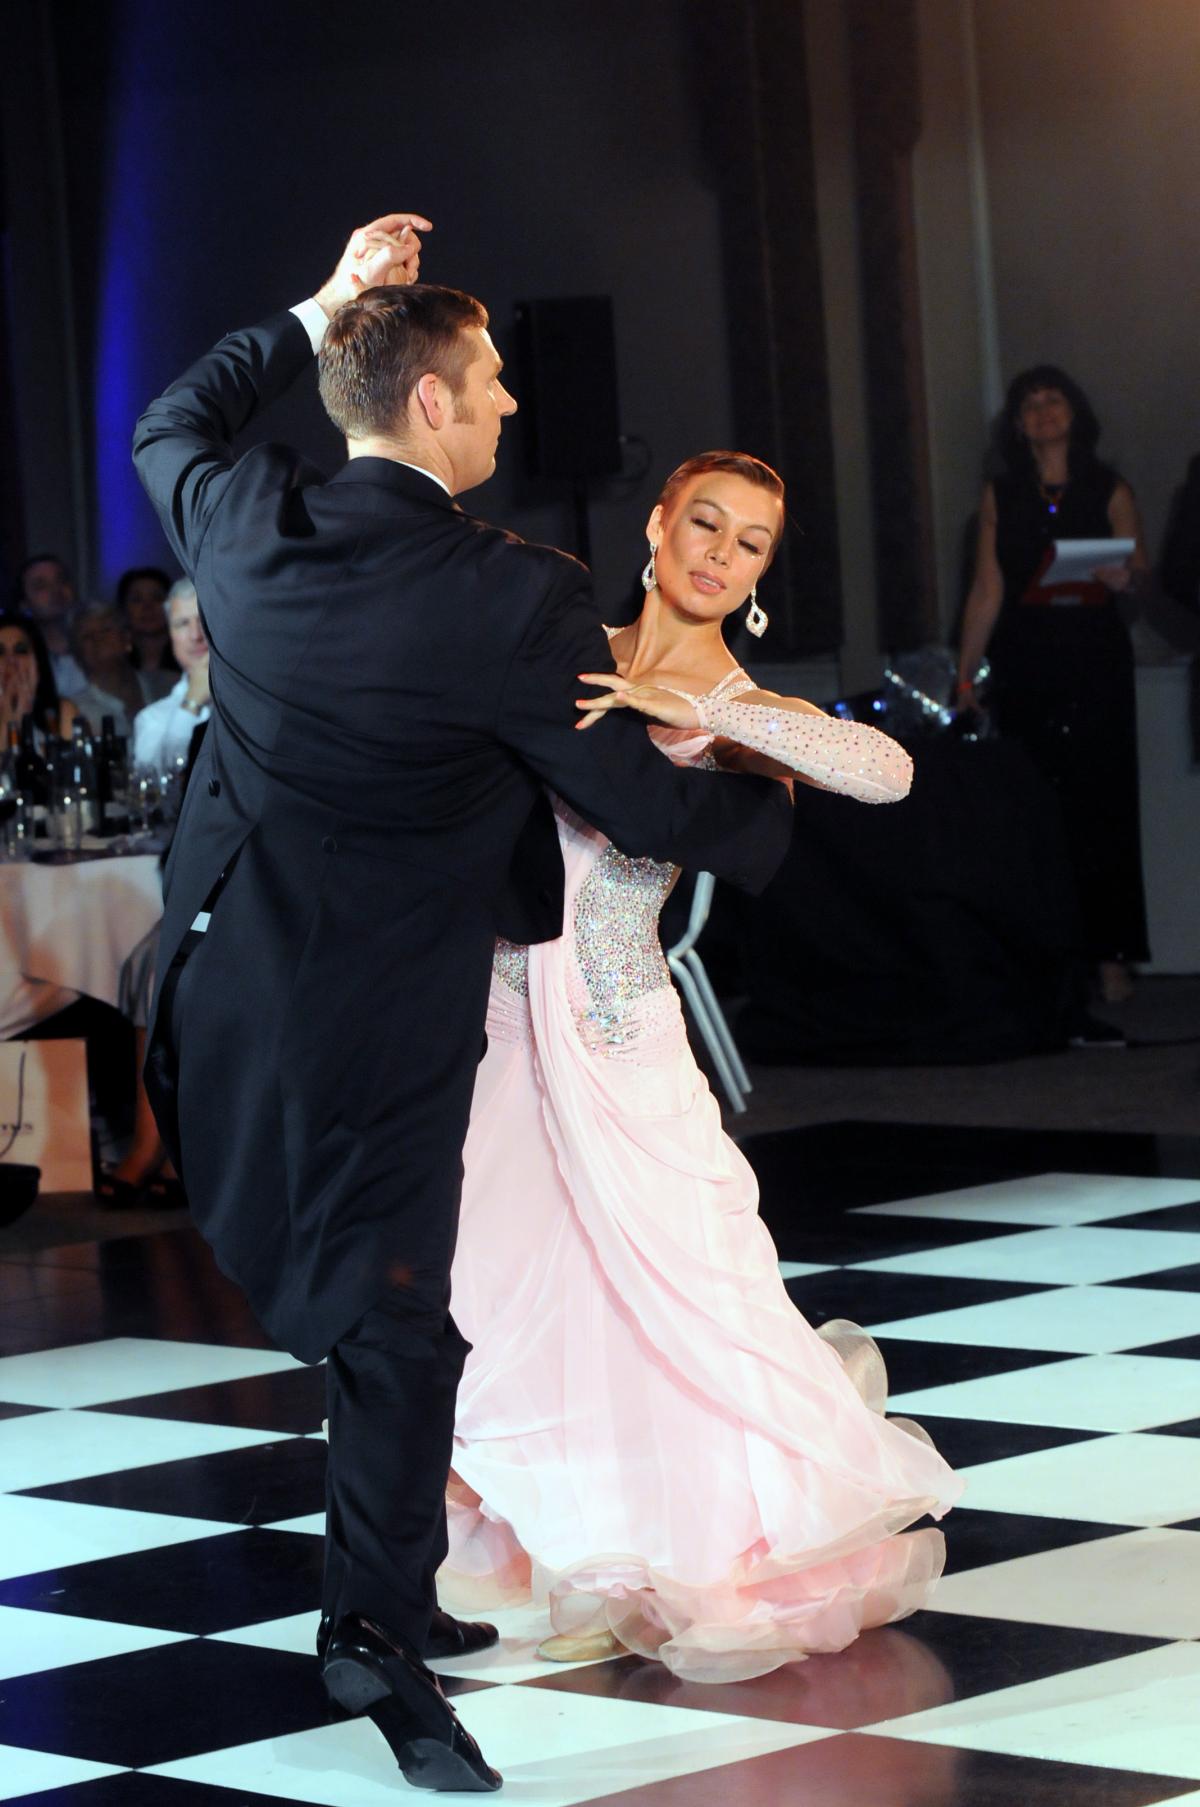 Paul Gallon dances the waltz